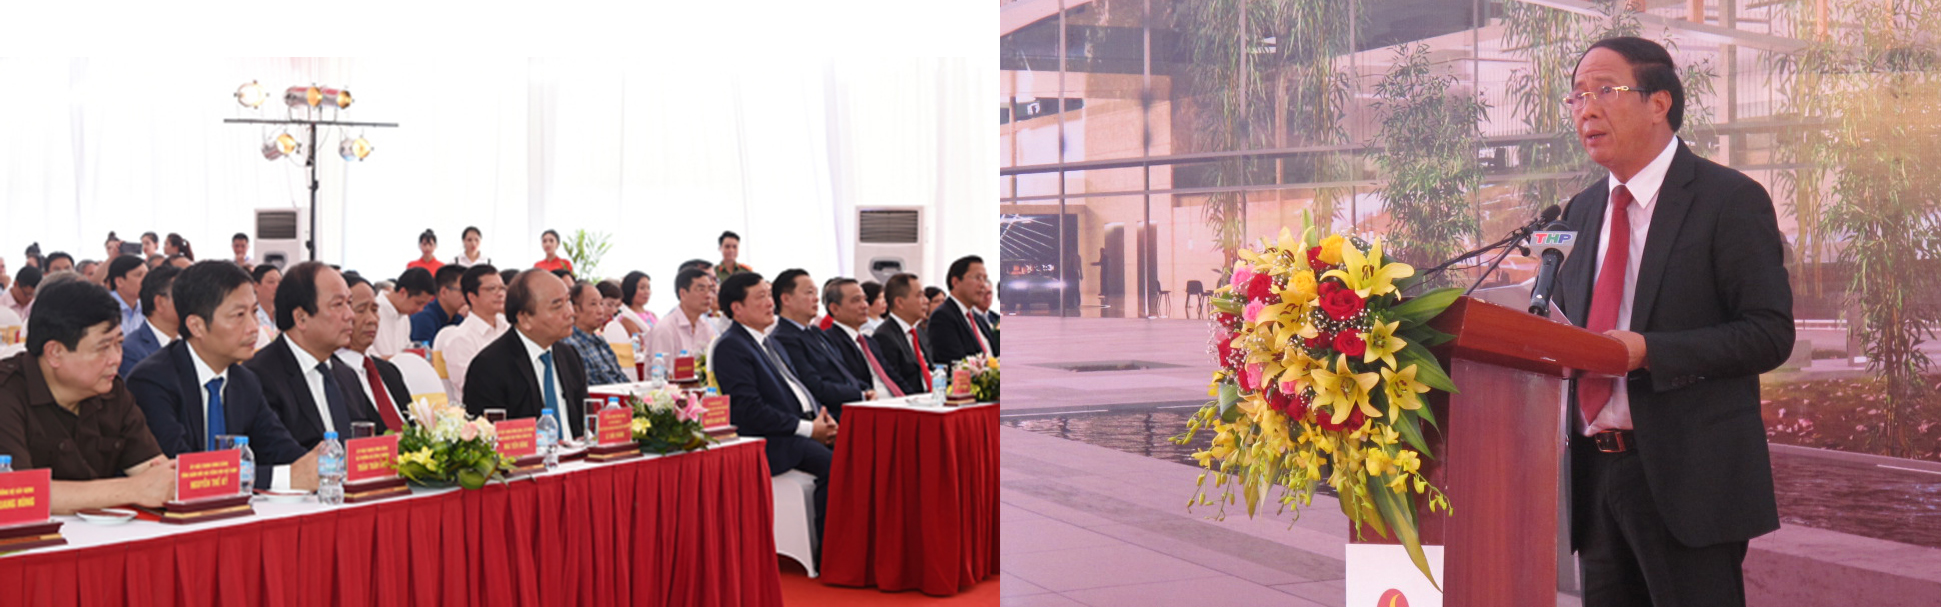 Lễ khởi công có sự hiện diện của nhiều lãnh đạo trung ương và thành phố Hải Phòng